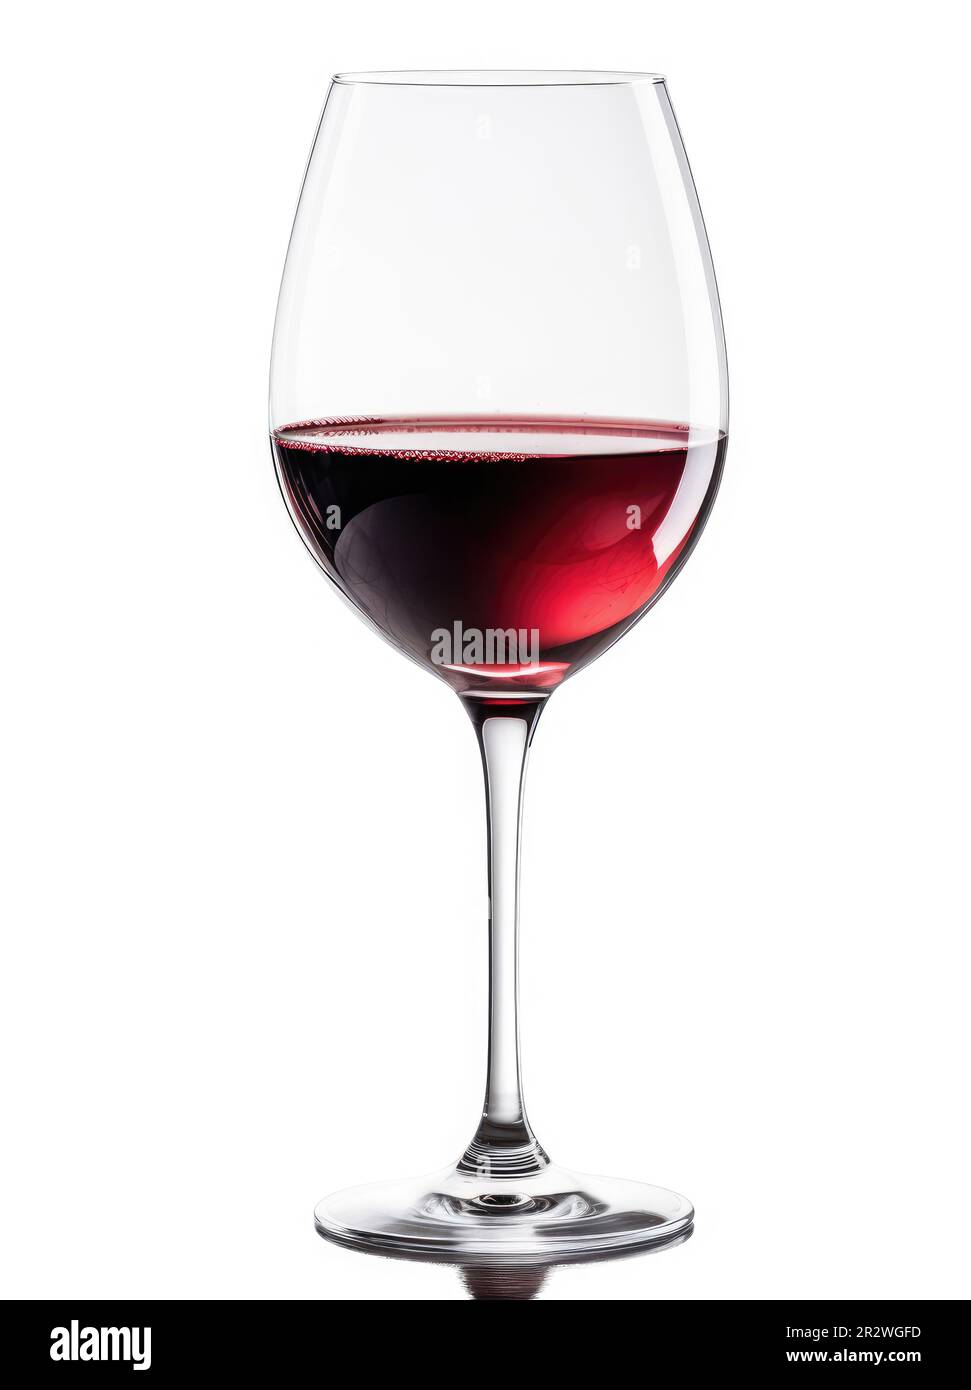 Un verre de vin argentin Malbec sur fond blanc Photo Stock - Alamy